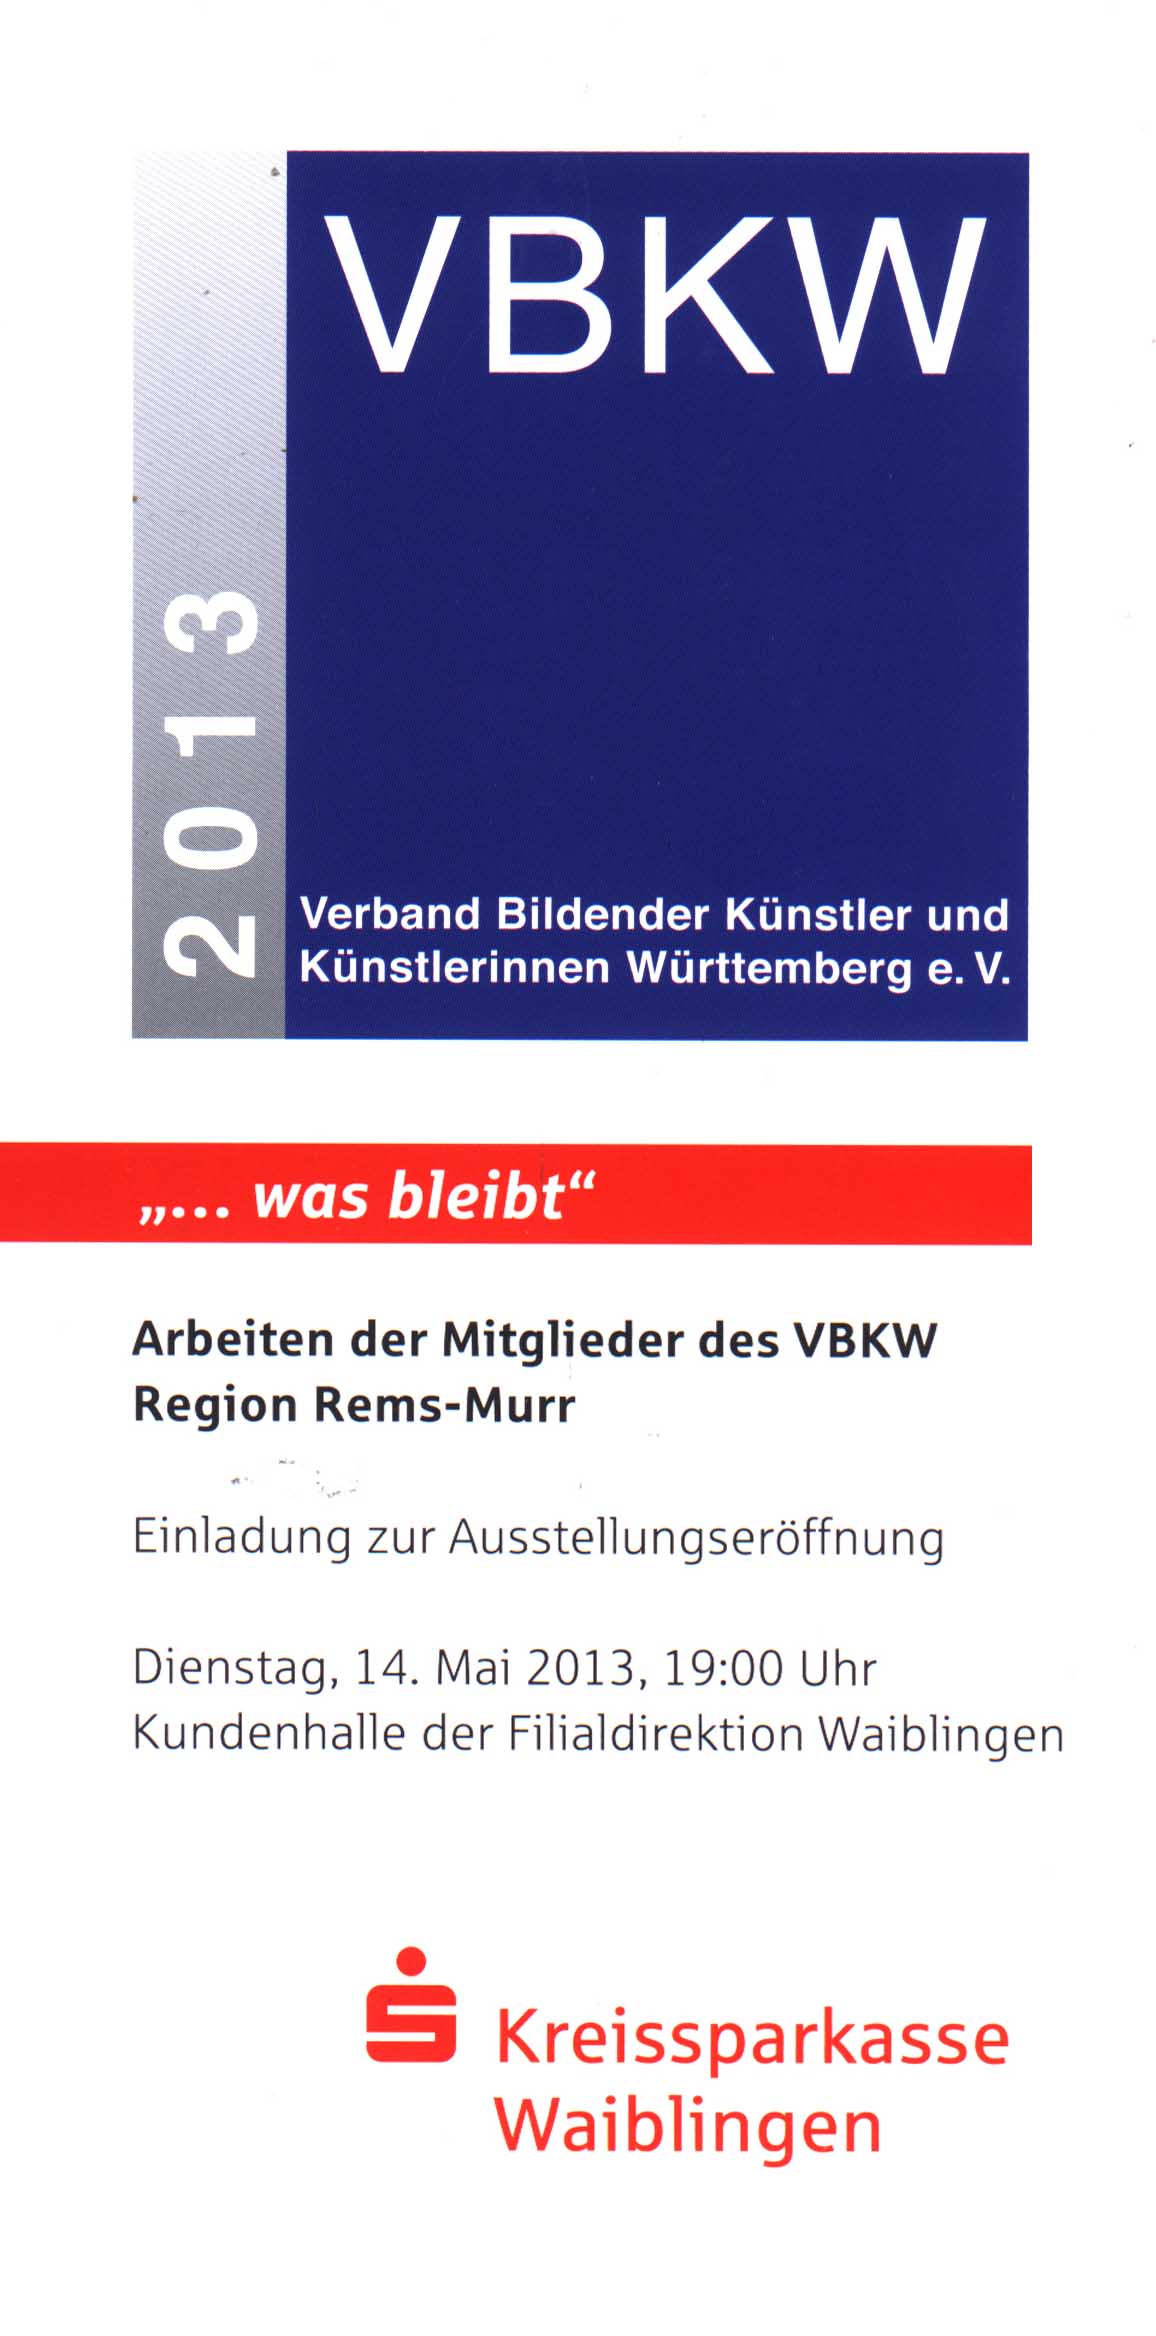 Ausstellung_Kreissparkasse Waiblingen_Klaus_Fischer